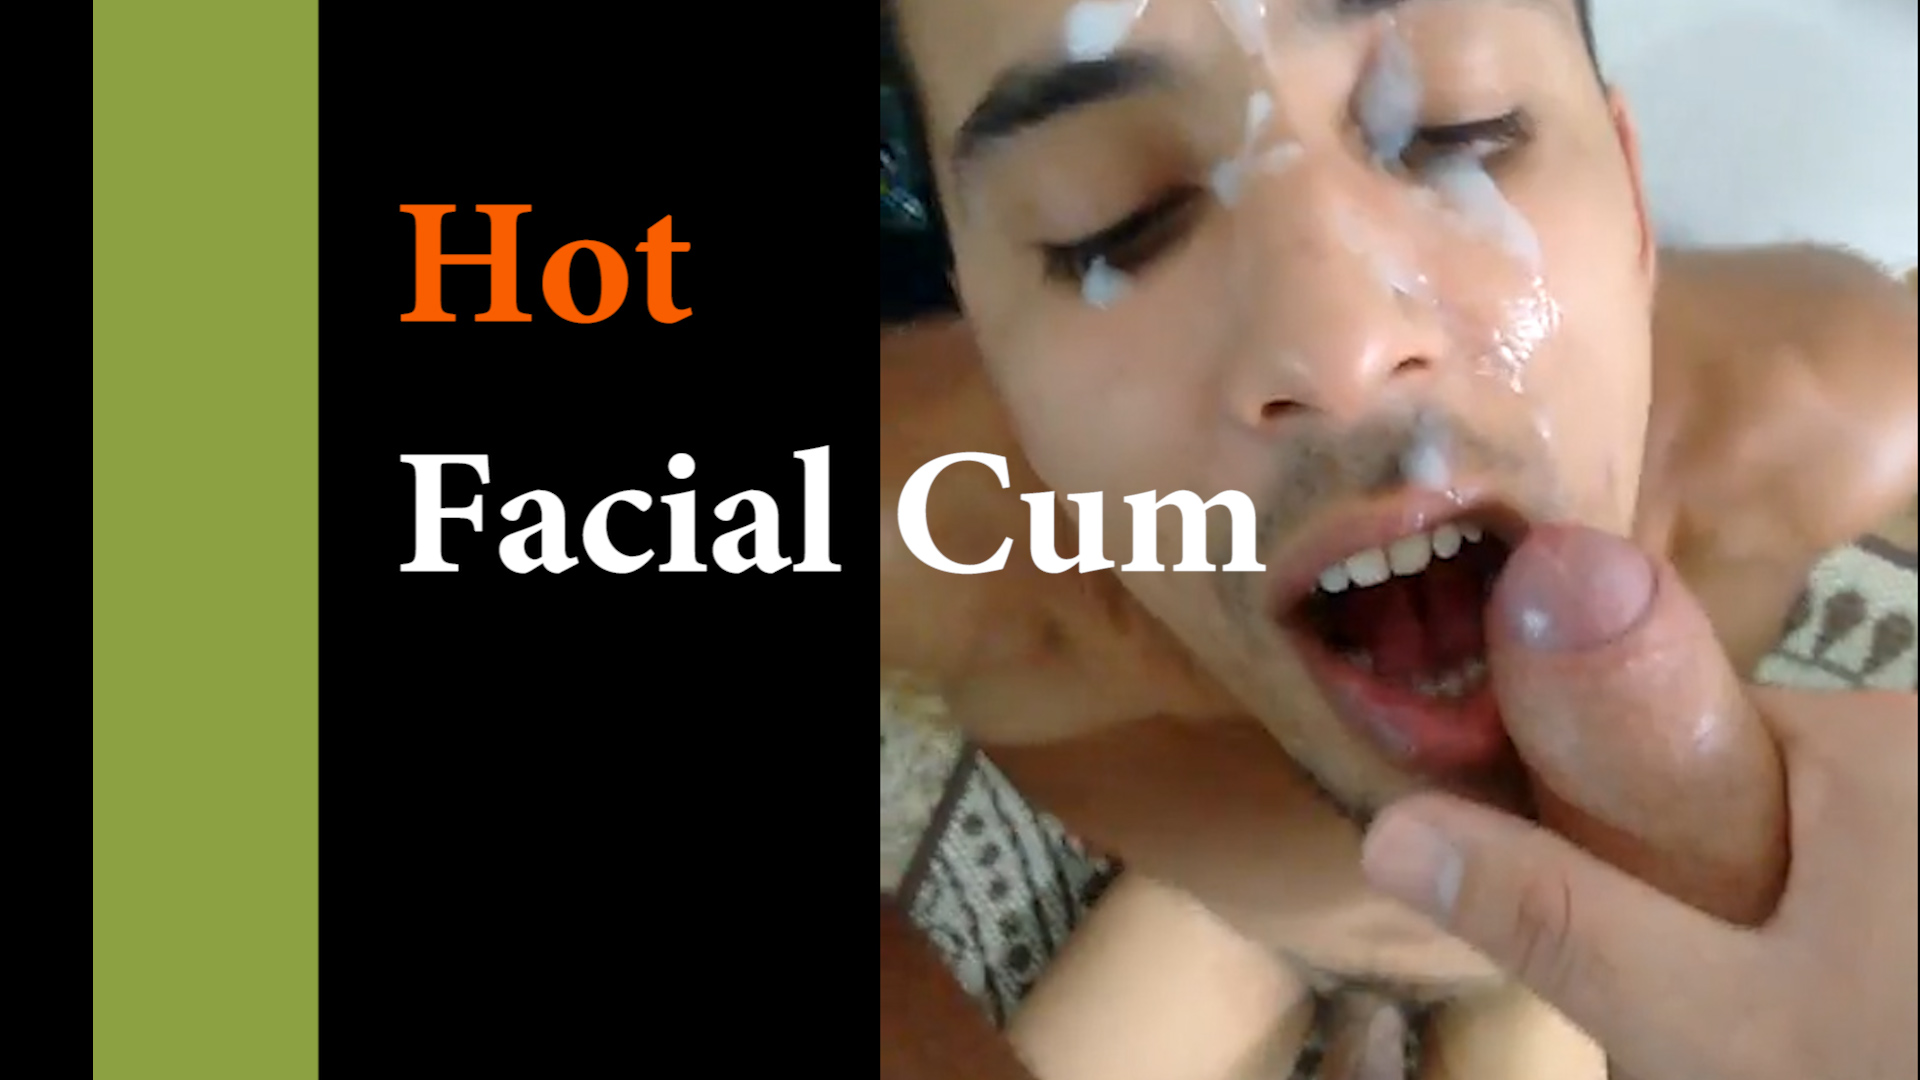 Another hot facial cum